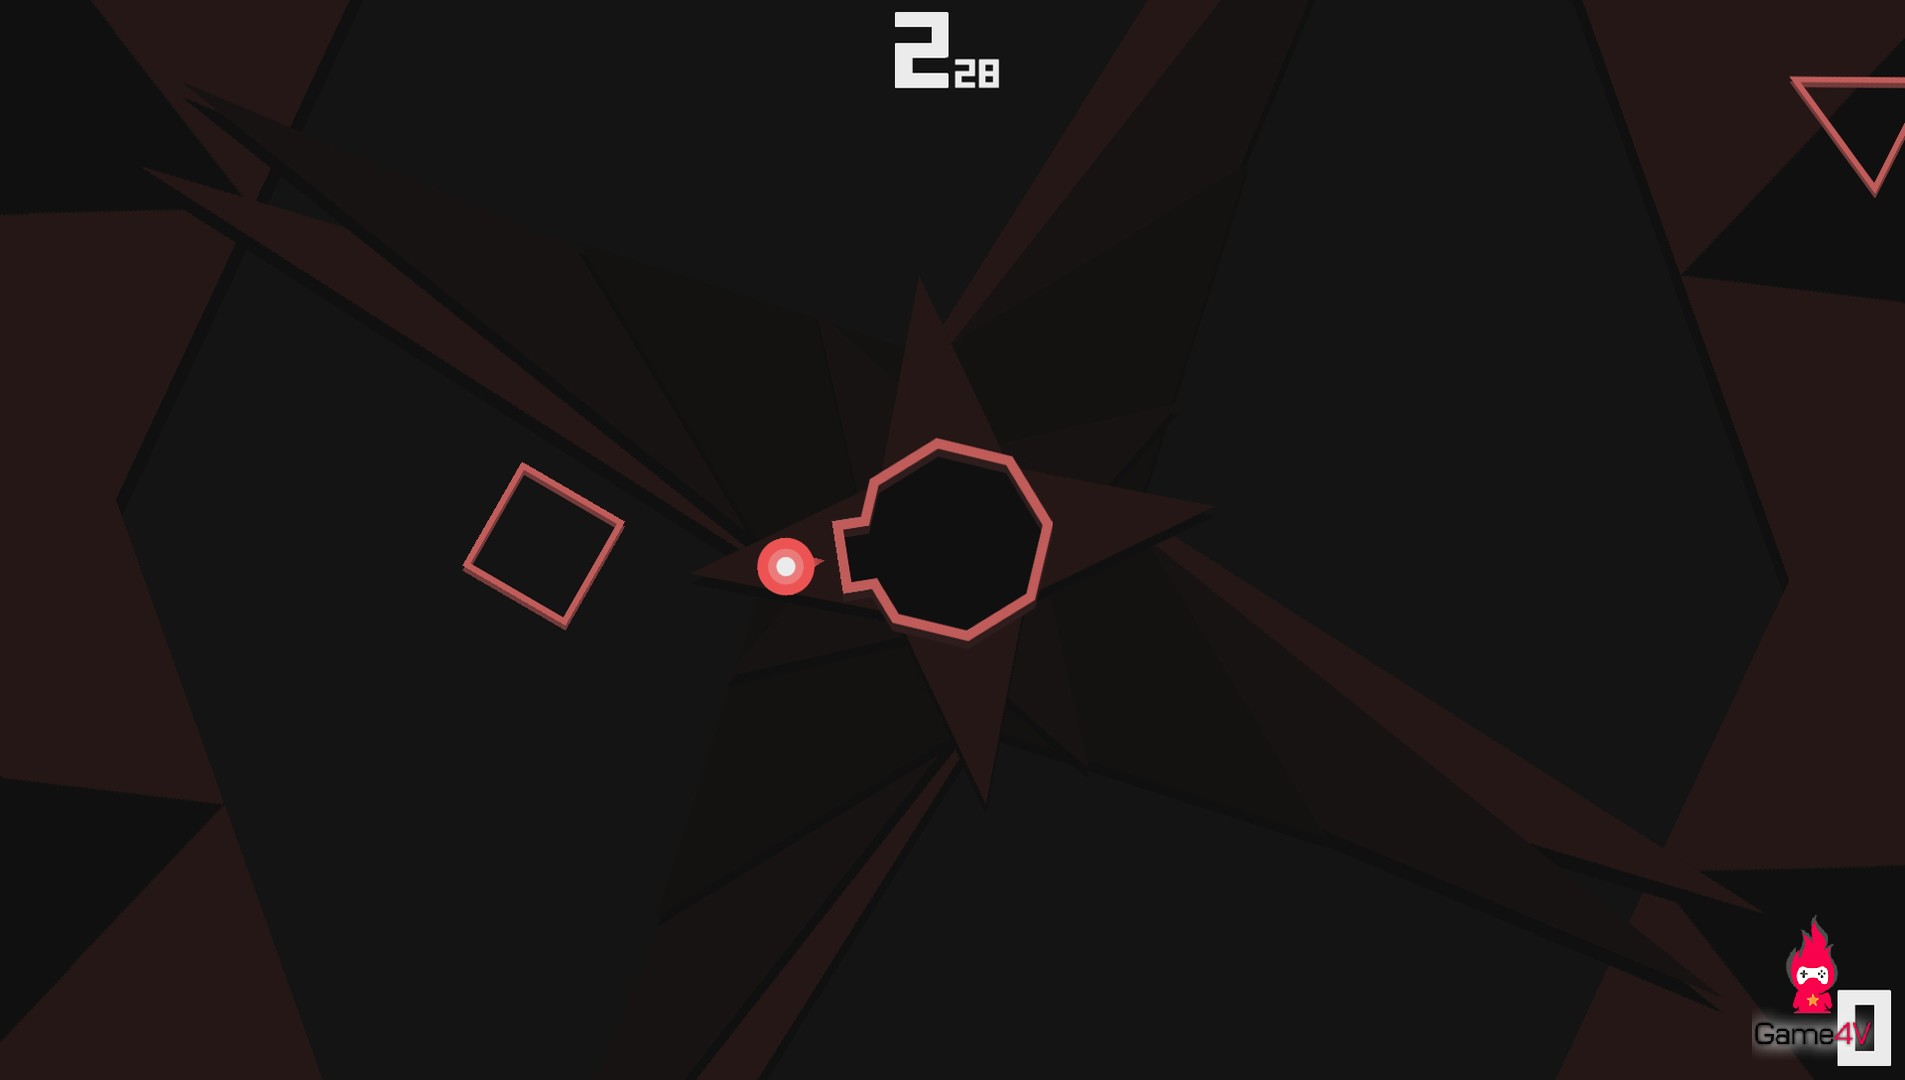 Polygoneer - Tựa game khiến người chơi hoa mắt, chóng mặt đang phát miễn phí trên Steam - Hình 2